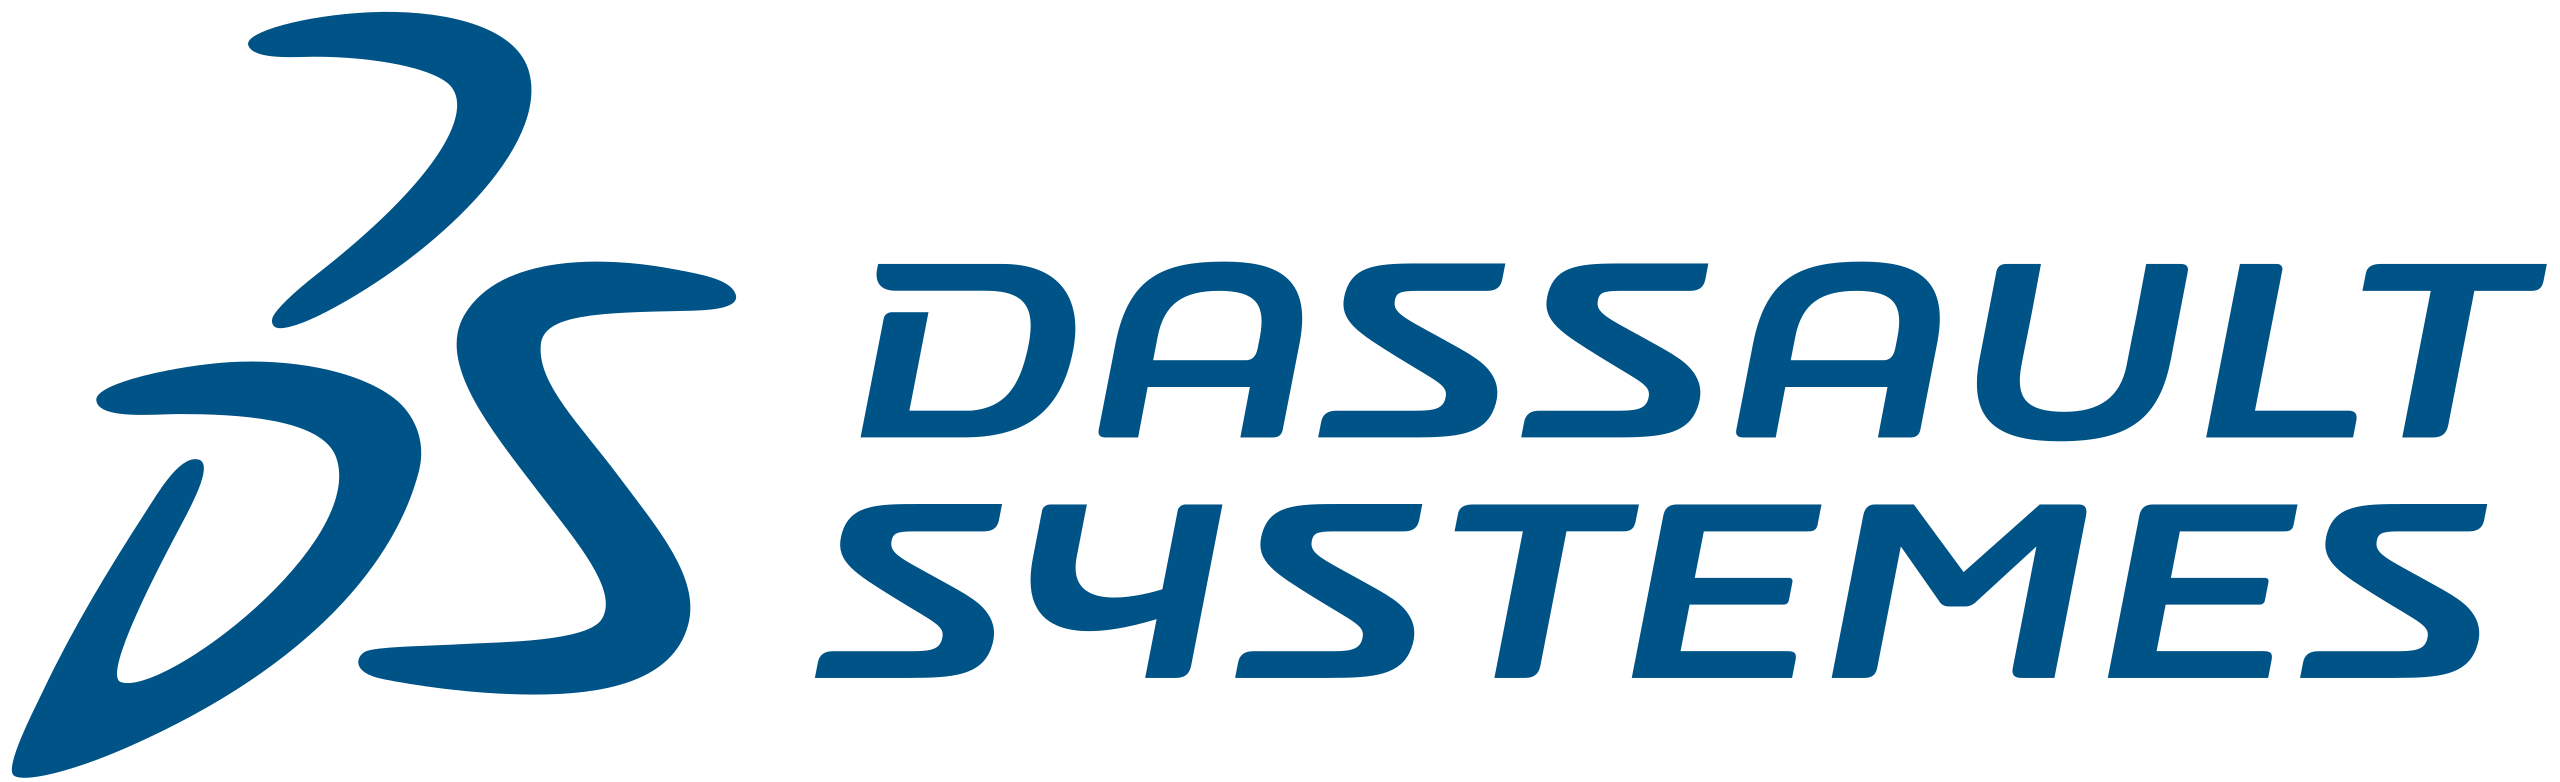 Dassault_Systemes